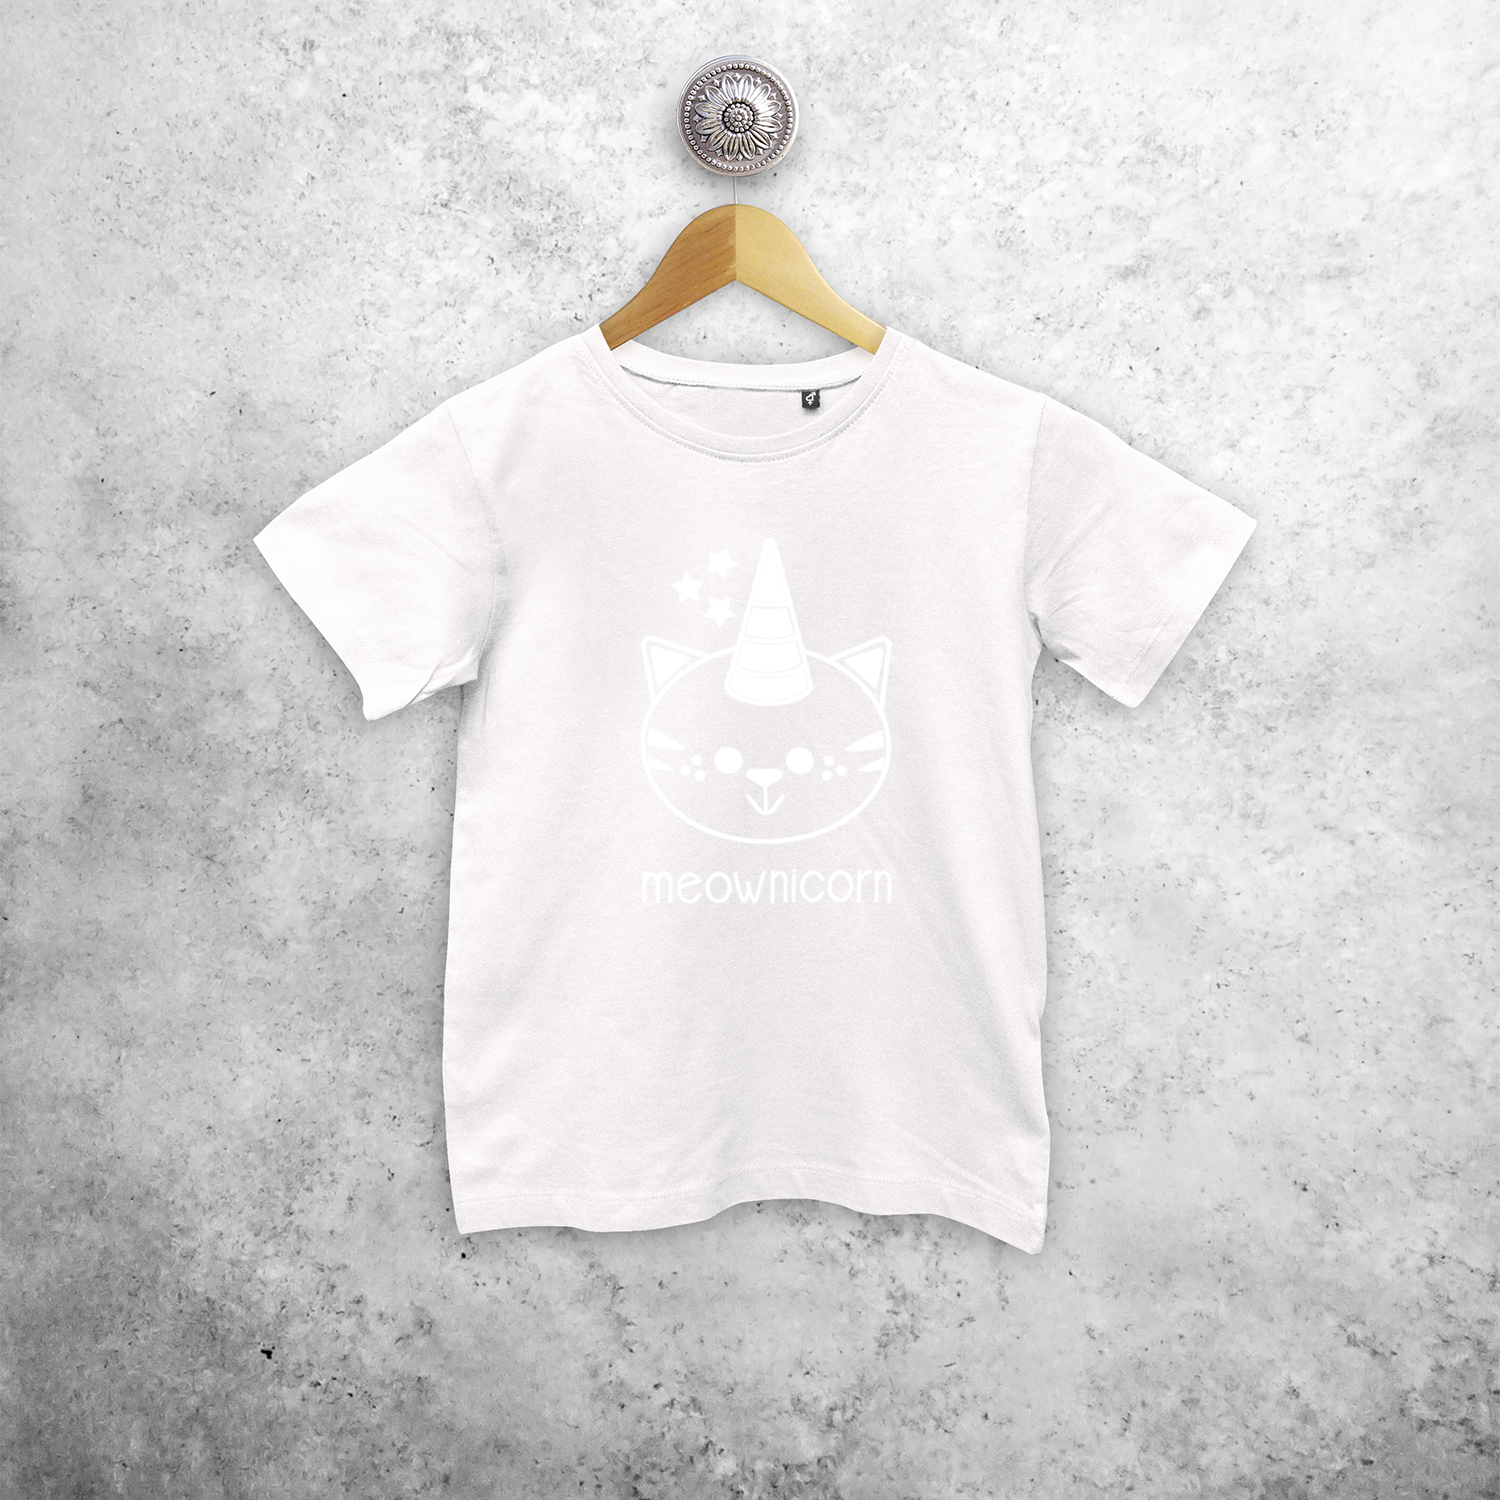 Meownicorn' magisch kind shirt met korte mouwen